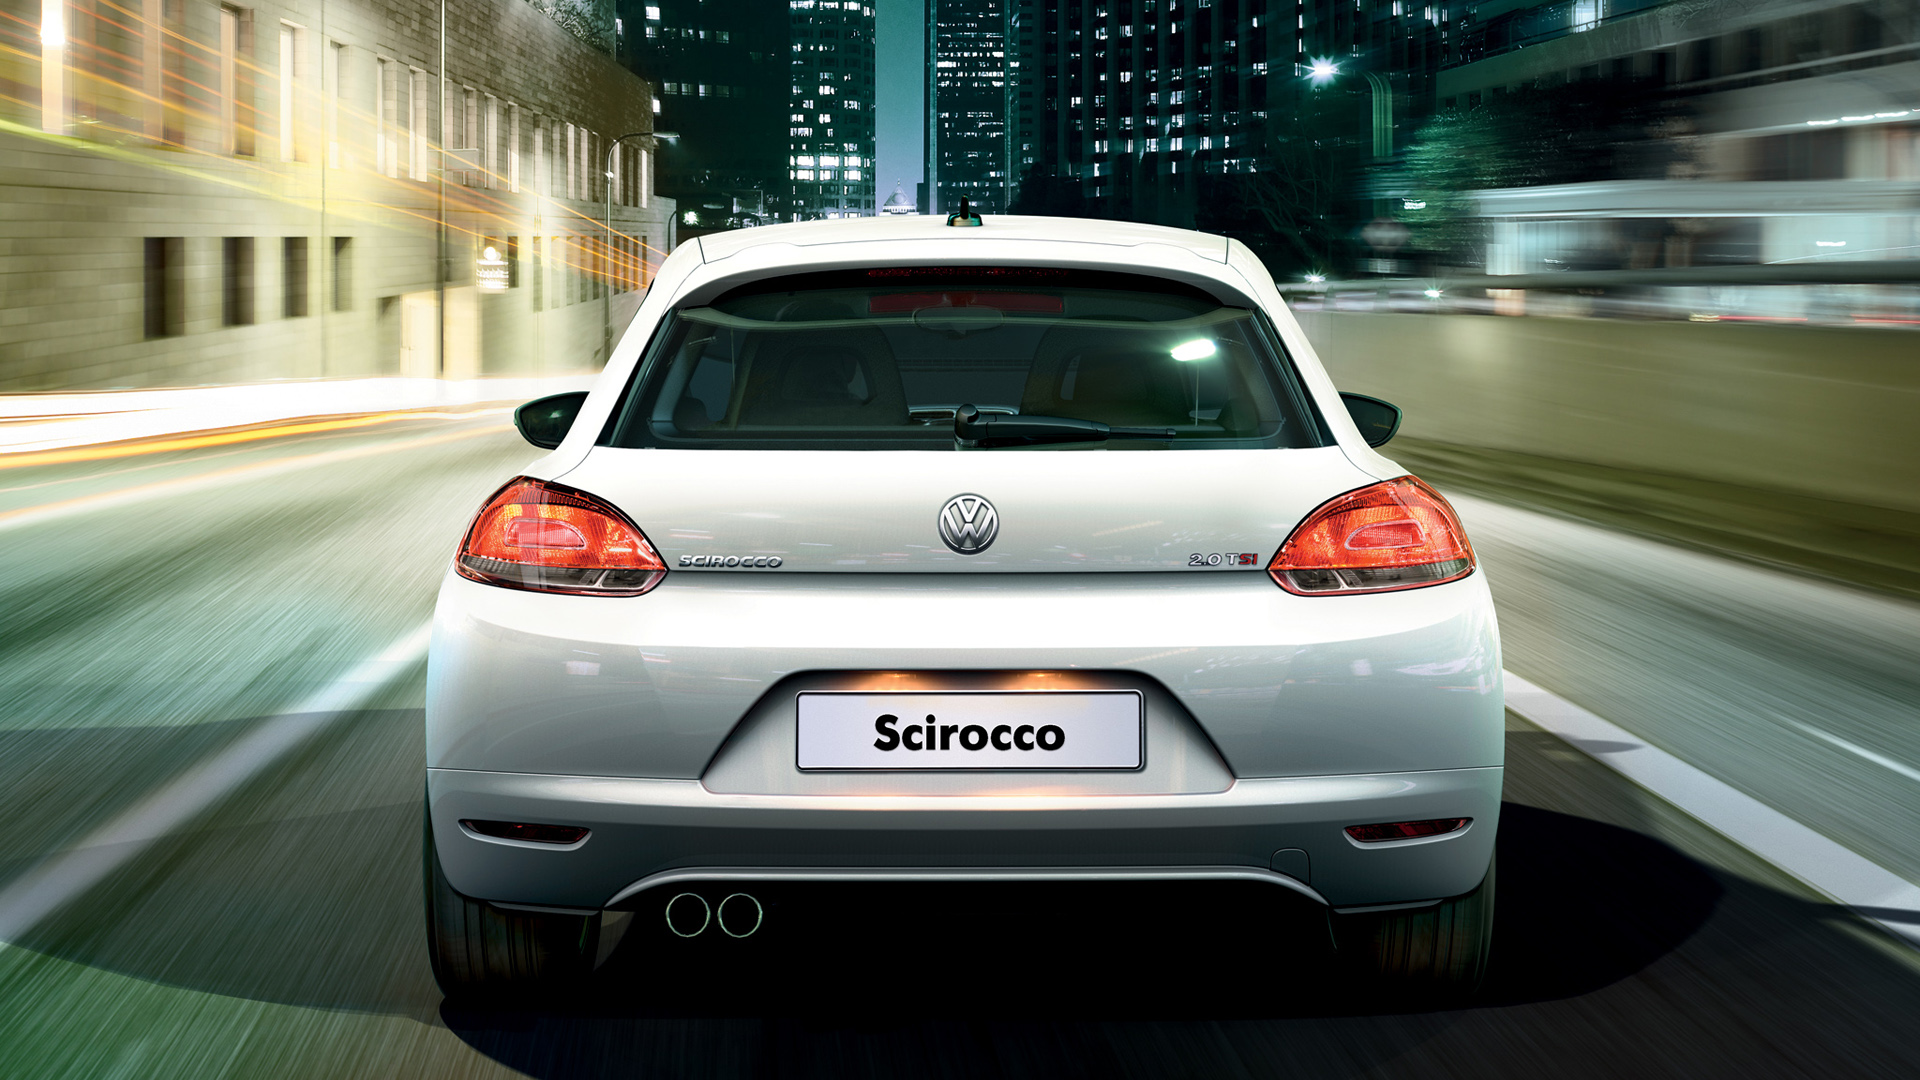  2008 Volkswagen Scirocco Wallpaper.